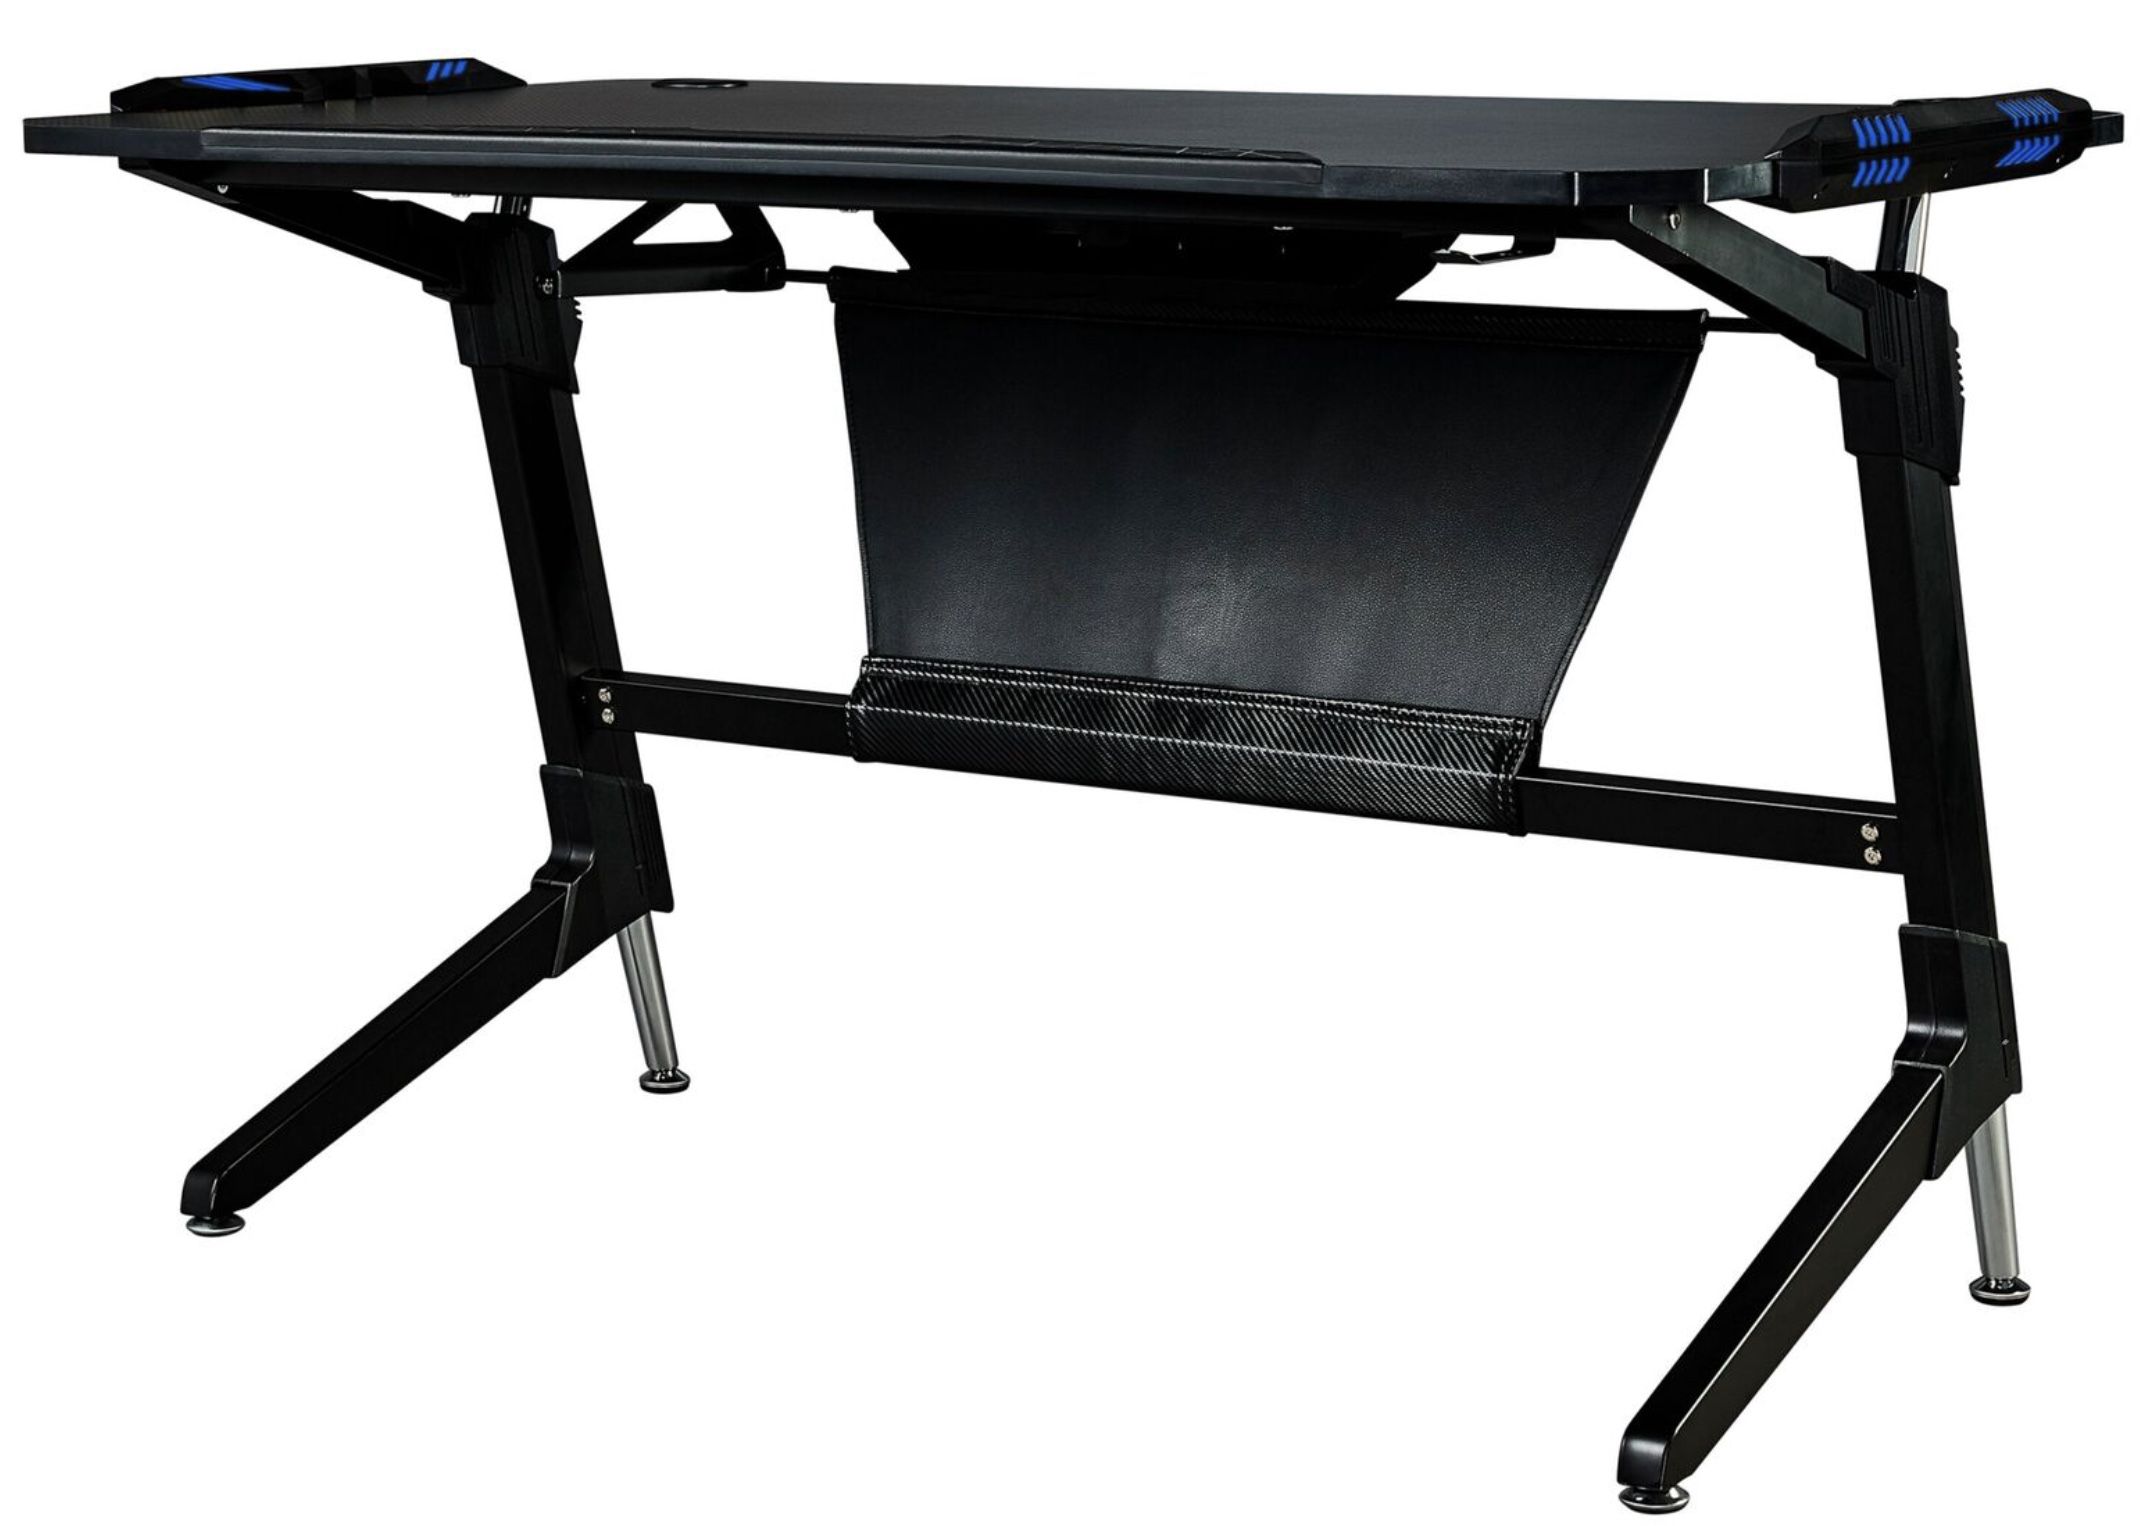 Medion Erazer X89020 Gaming Tisch mit Beleuchtung und Kabelmanagement für 129,99€ (statt 230€)